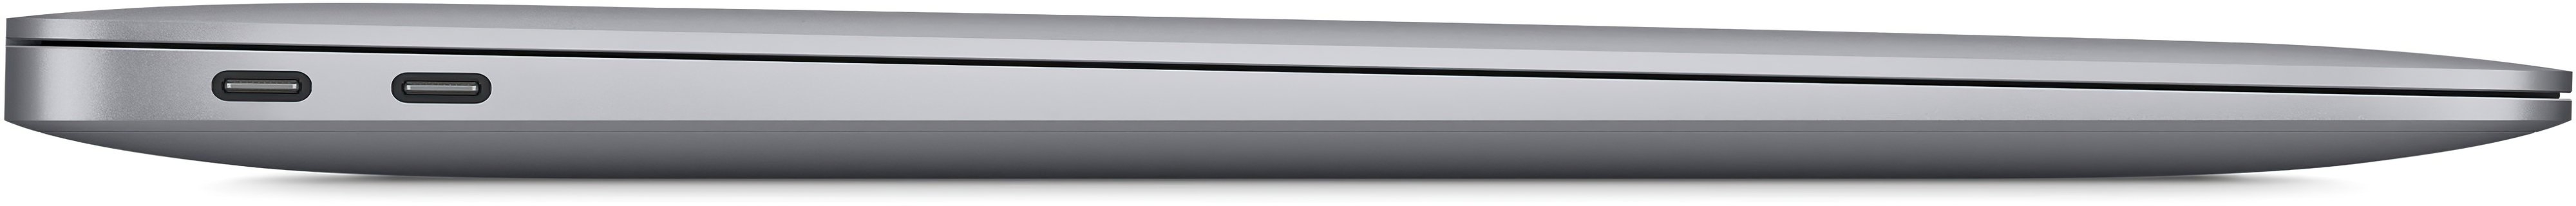 Ноутбук Apple MacBook Air 13'' 256GB Space Gray 2020 (MGN93) фото №5